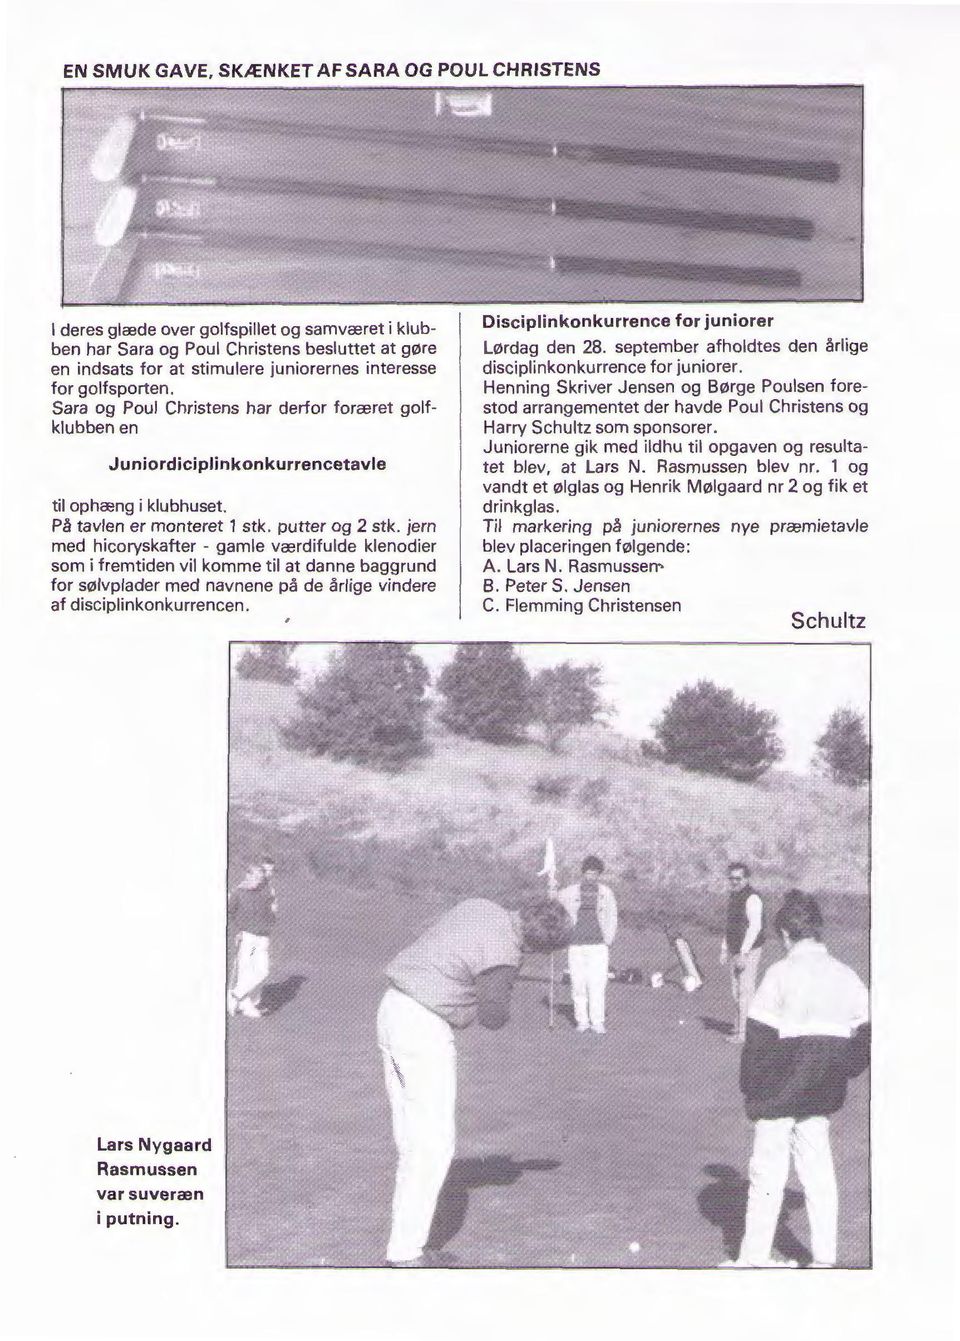 Sara og Poul Christens har derfor foræret golfklubben en Juniordiciplinkonkurrencetavle til ophæng i klubhuset. På tavlen er monteret 1 stk. putter og 2 stk.